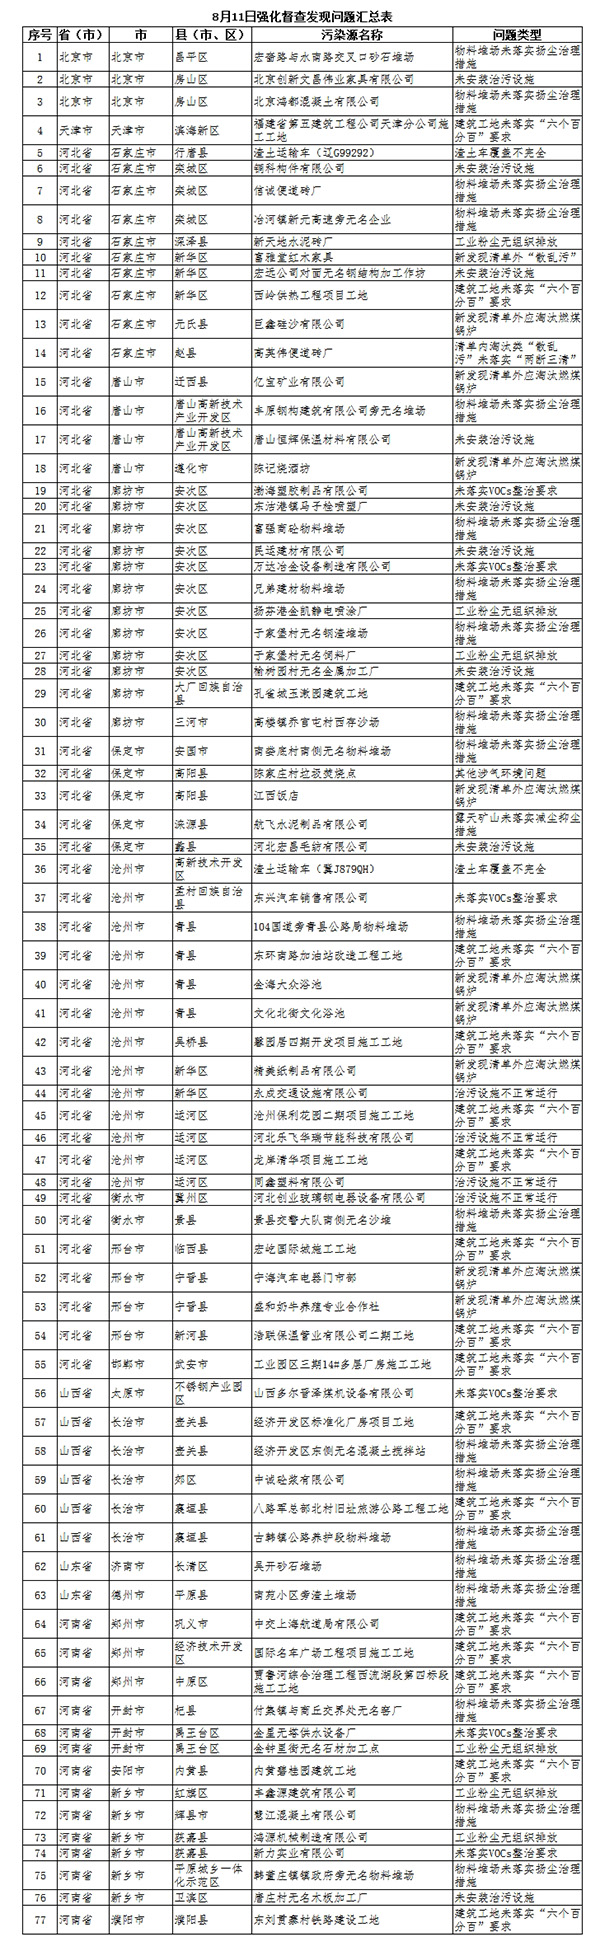 环境部日查京津冀及周边204县市区发现涉气环境问题78个